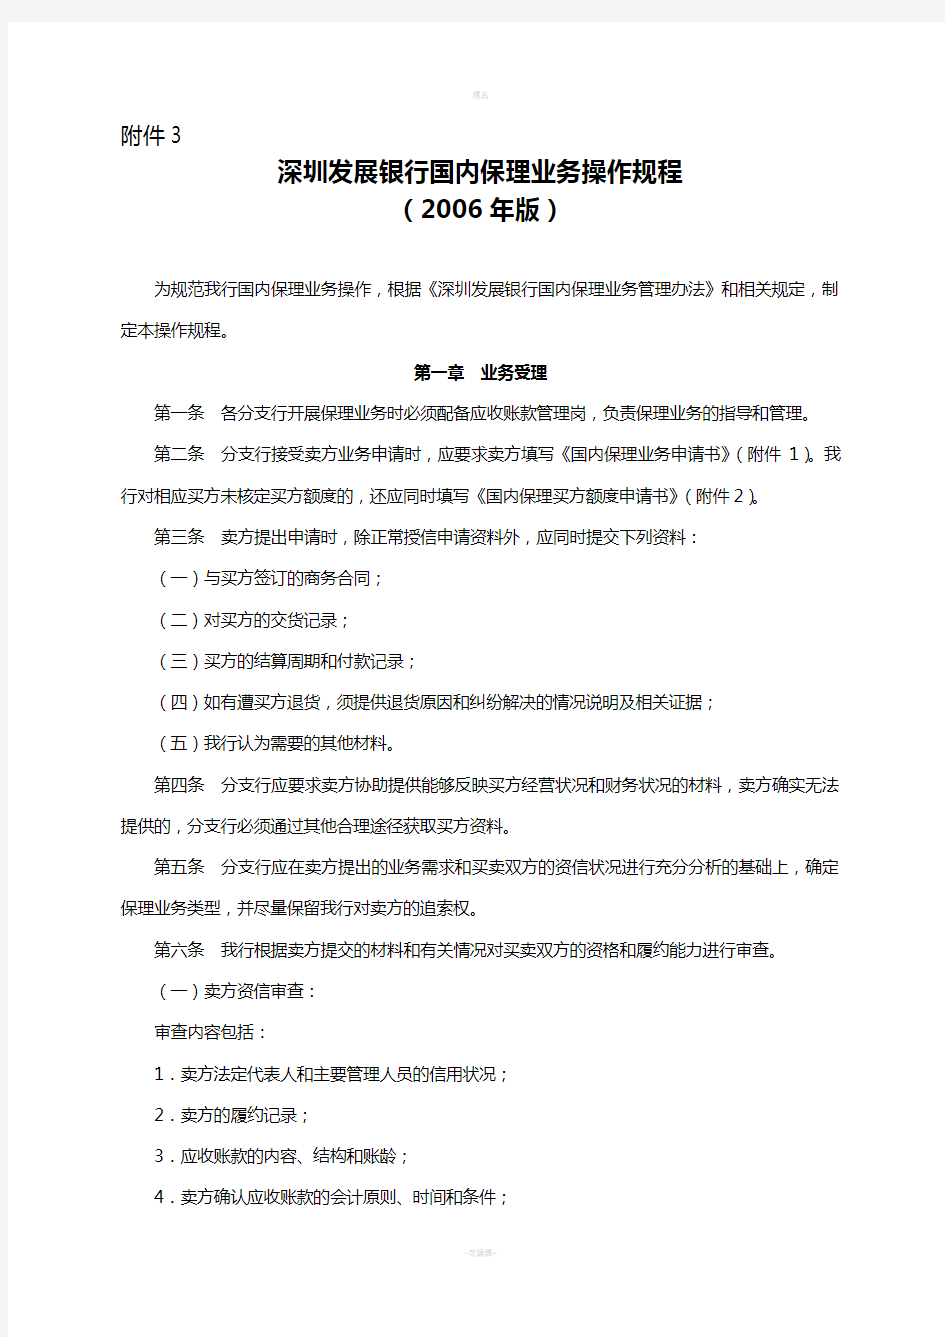 36-深圳发展银行国内保理业务操作规程深发银[2006]47号